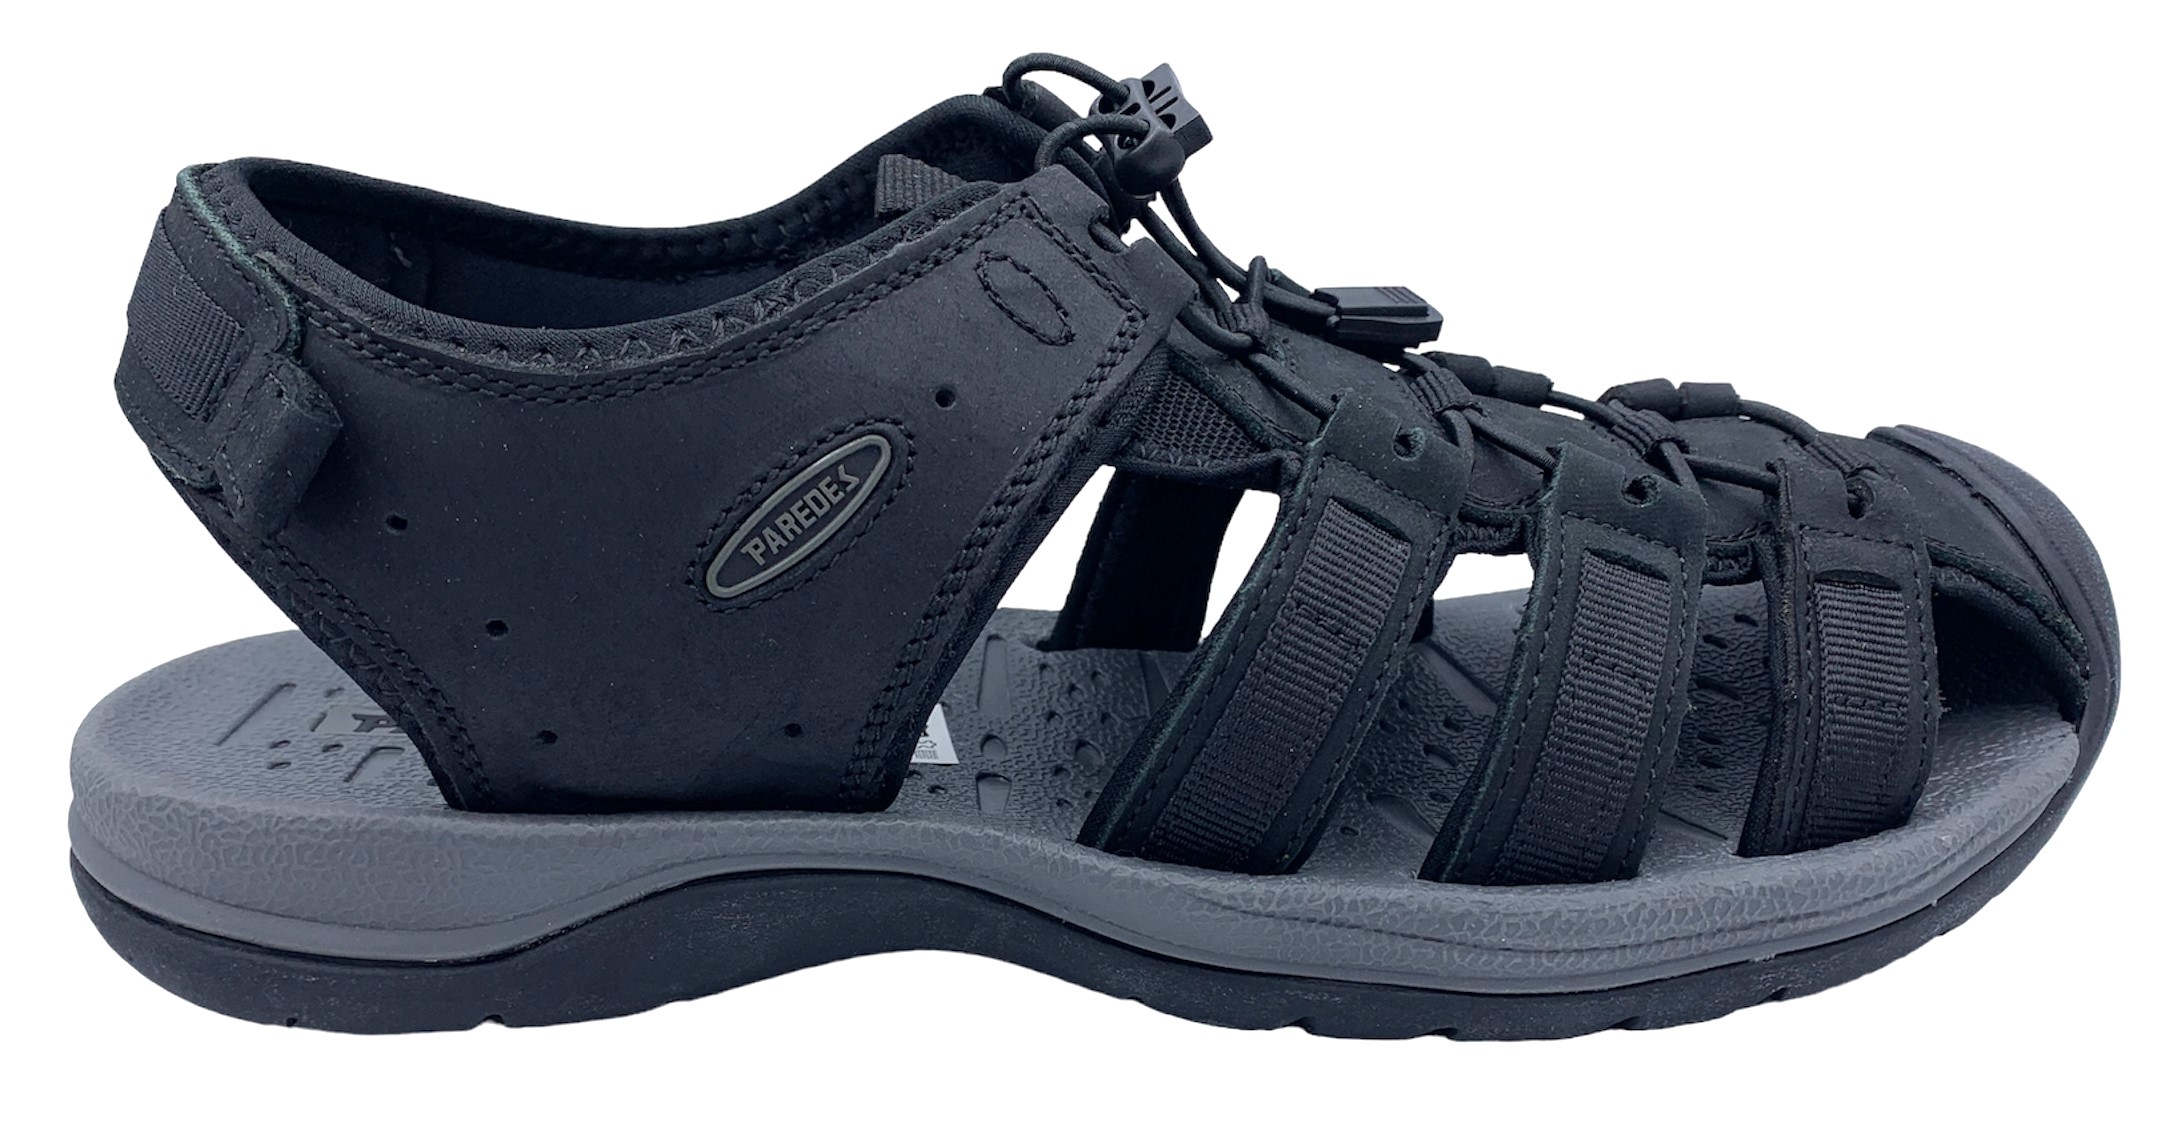 Pánské kožené sandále Misstic Paredes 22175 černé Velikost: 41 (EU)